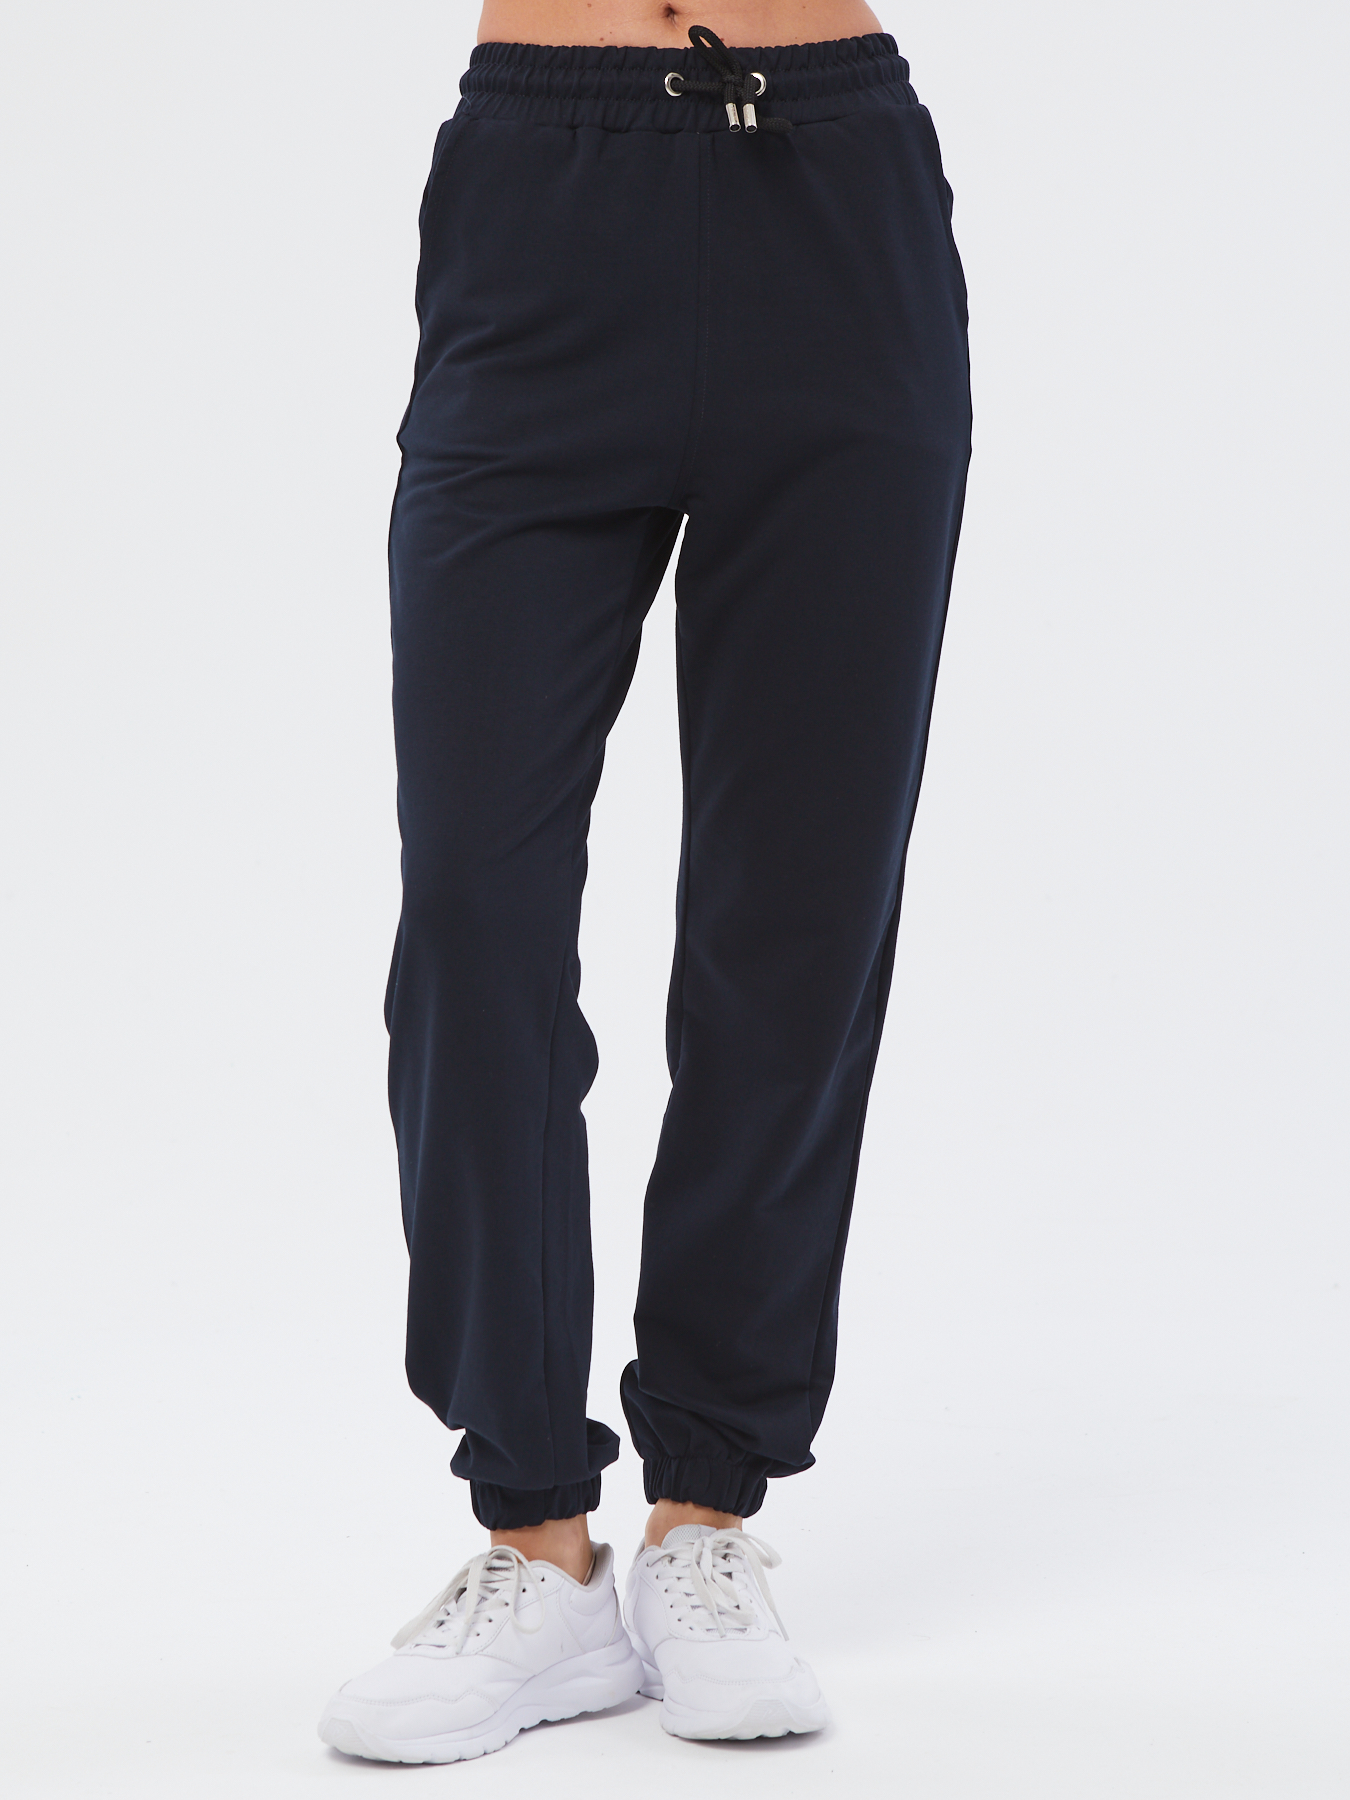 Спортивные брюки женские Still-expert б5 синие 44/150-165